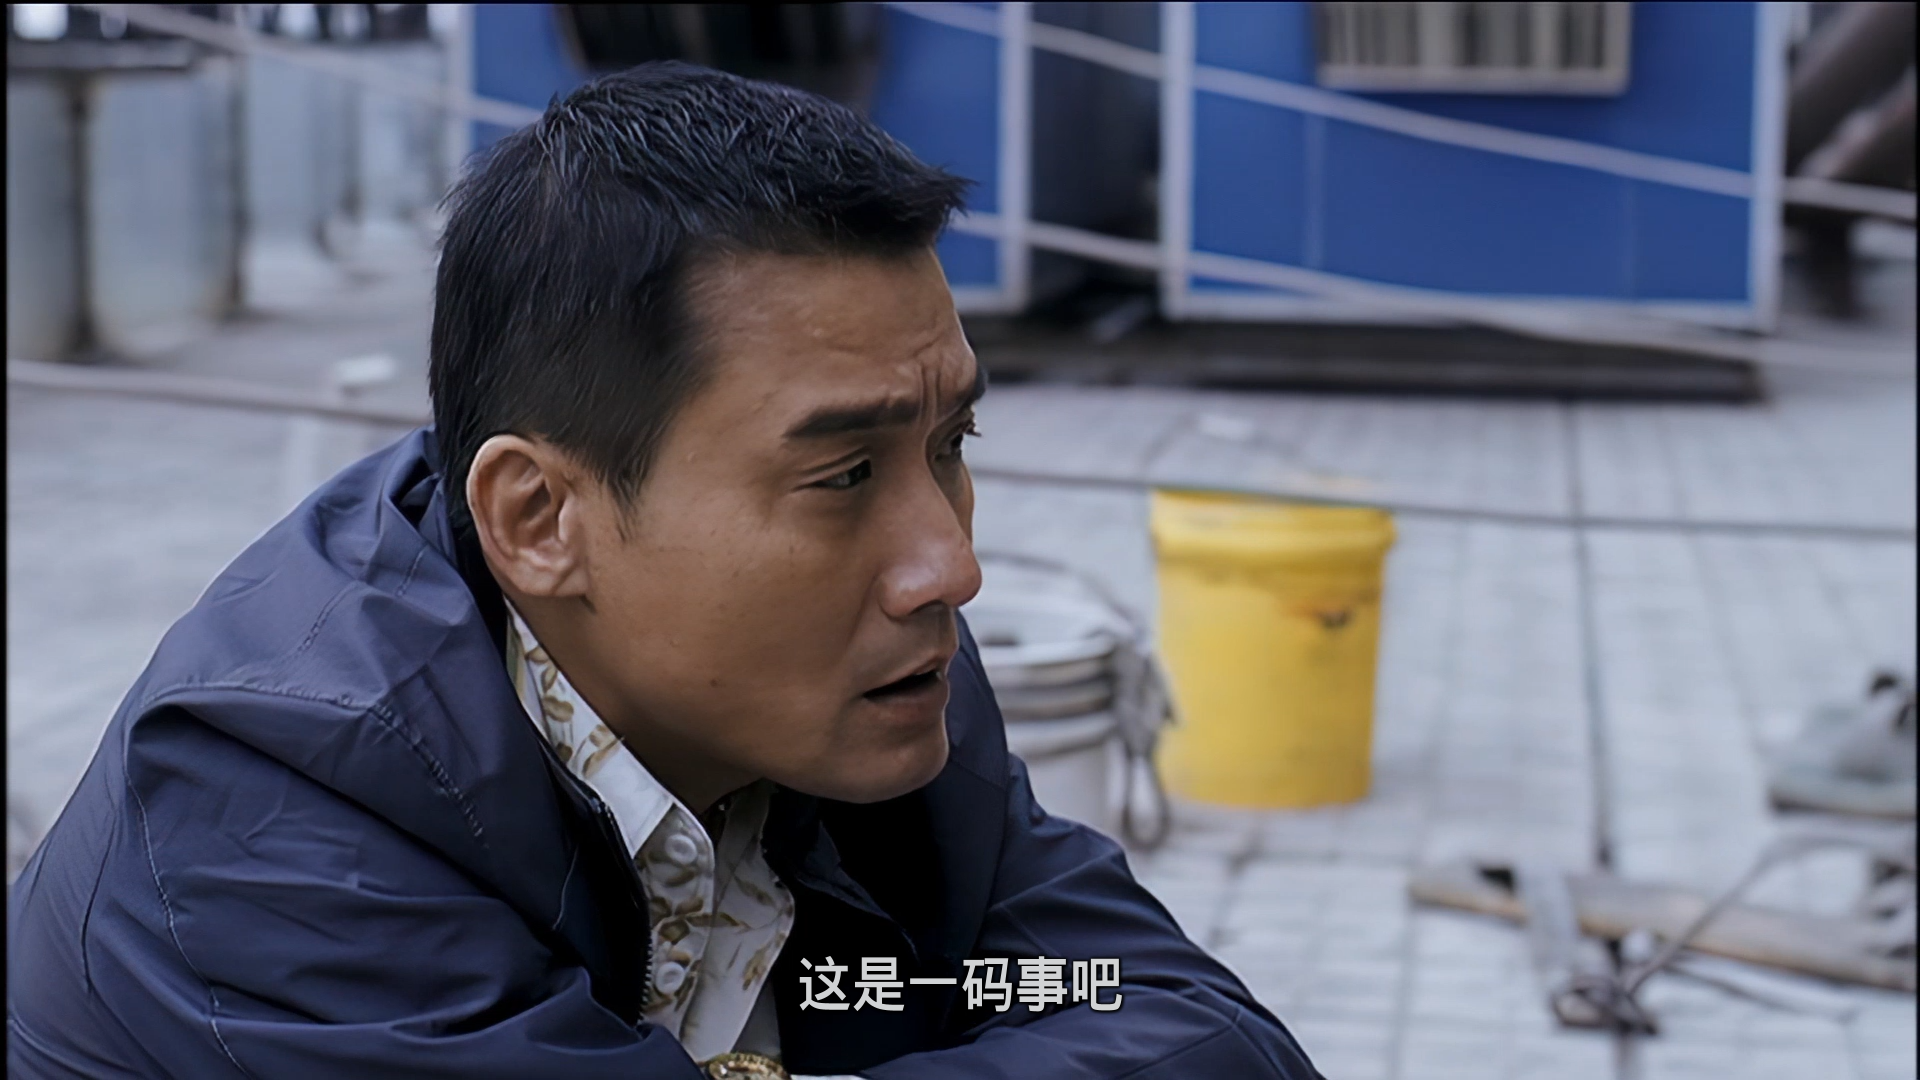 苹果  [DVD原盘修复高清简繁中字][修正上一版时间轴错乱] Lost In Beijing 2007 UNRATED DVD Blu-ray 1080p AVC AC3-5 1-BHYS@OurBits[20.4GB]-7.png